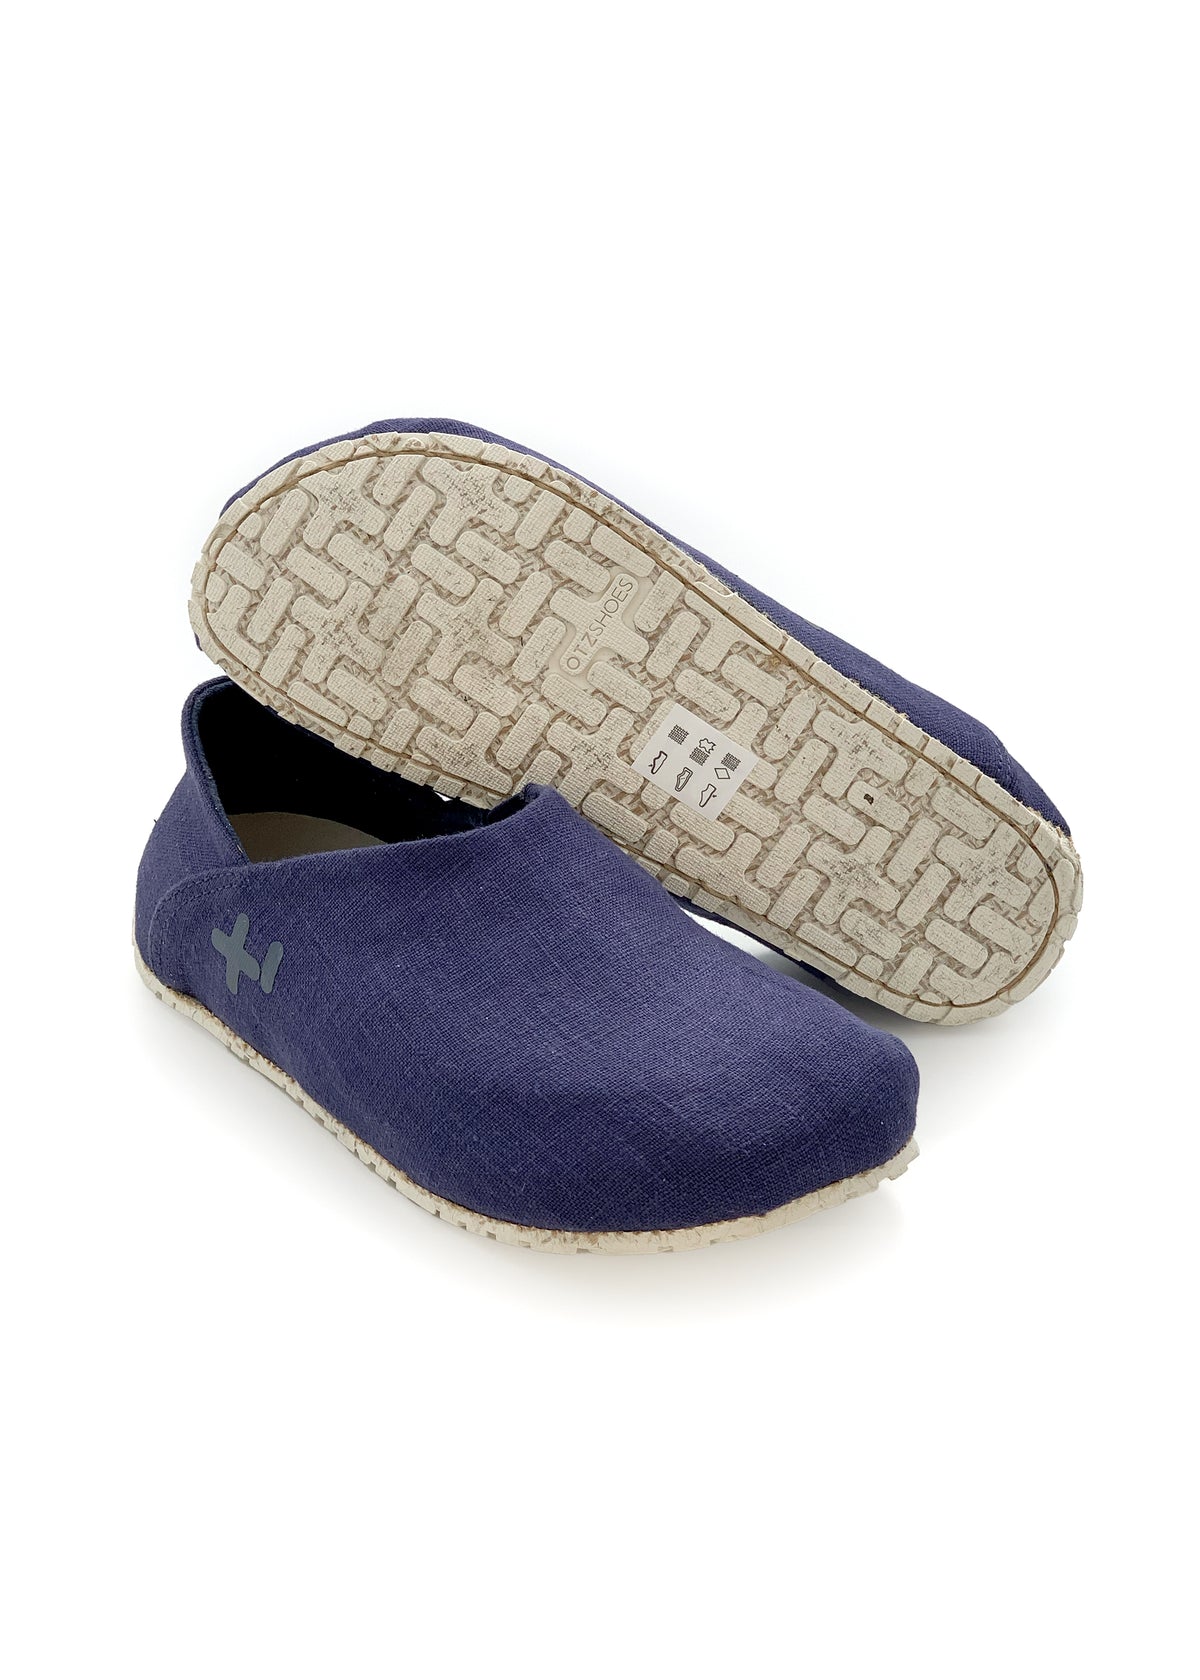 OTZ shoes - dark blue linen fabric